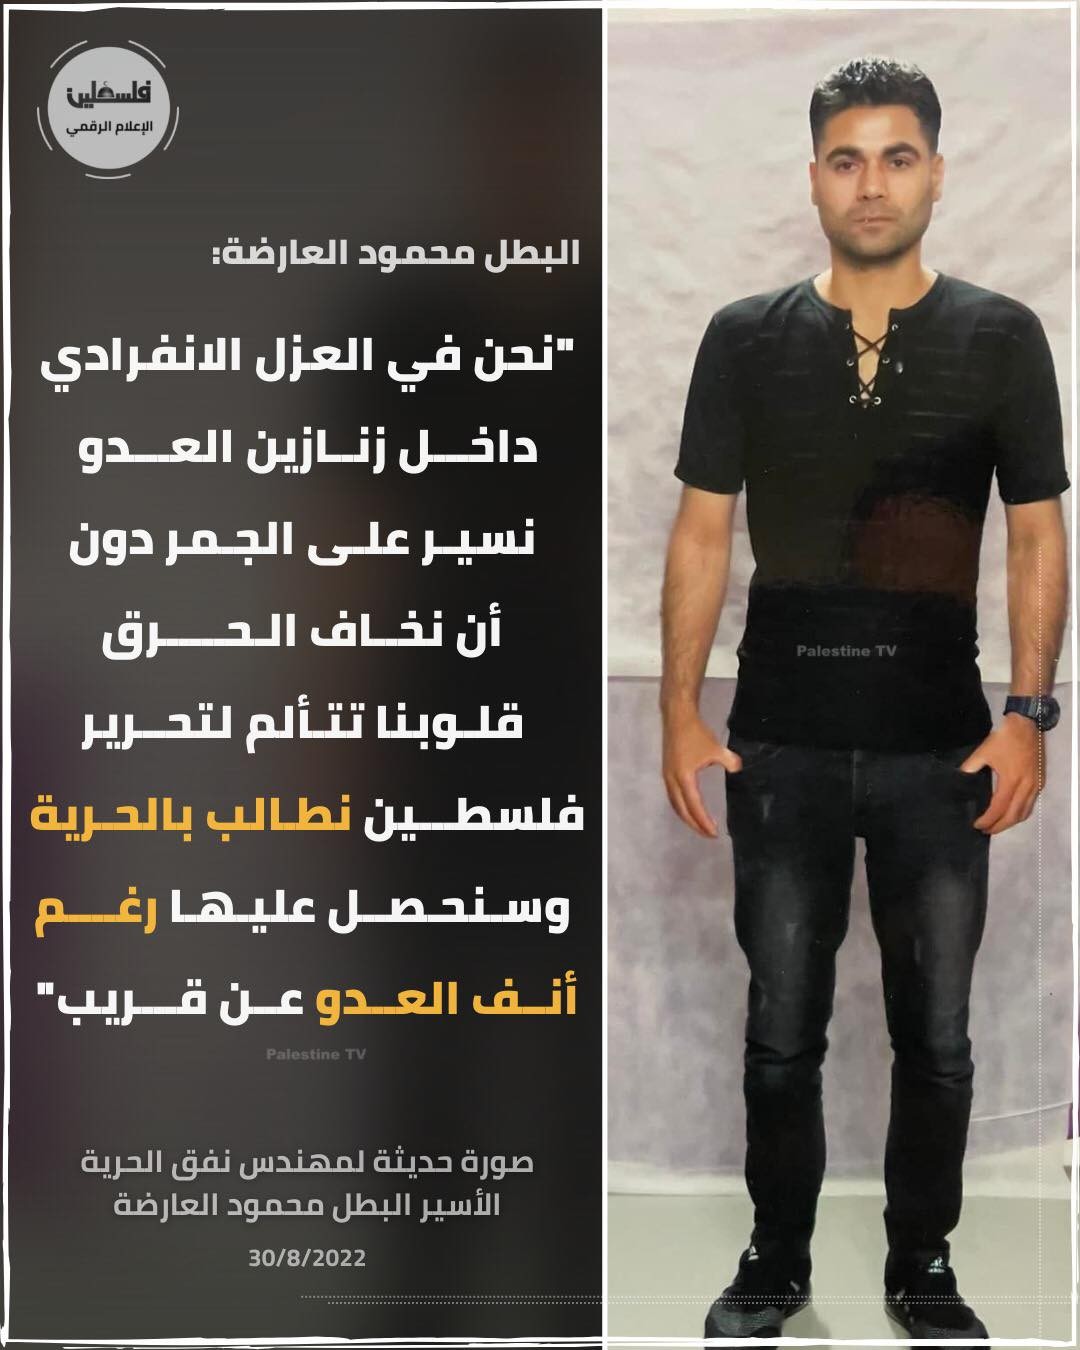 صورة حديثة للبطل محمود العارضة من داخل سجون الاحتلال.jpg